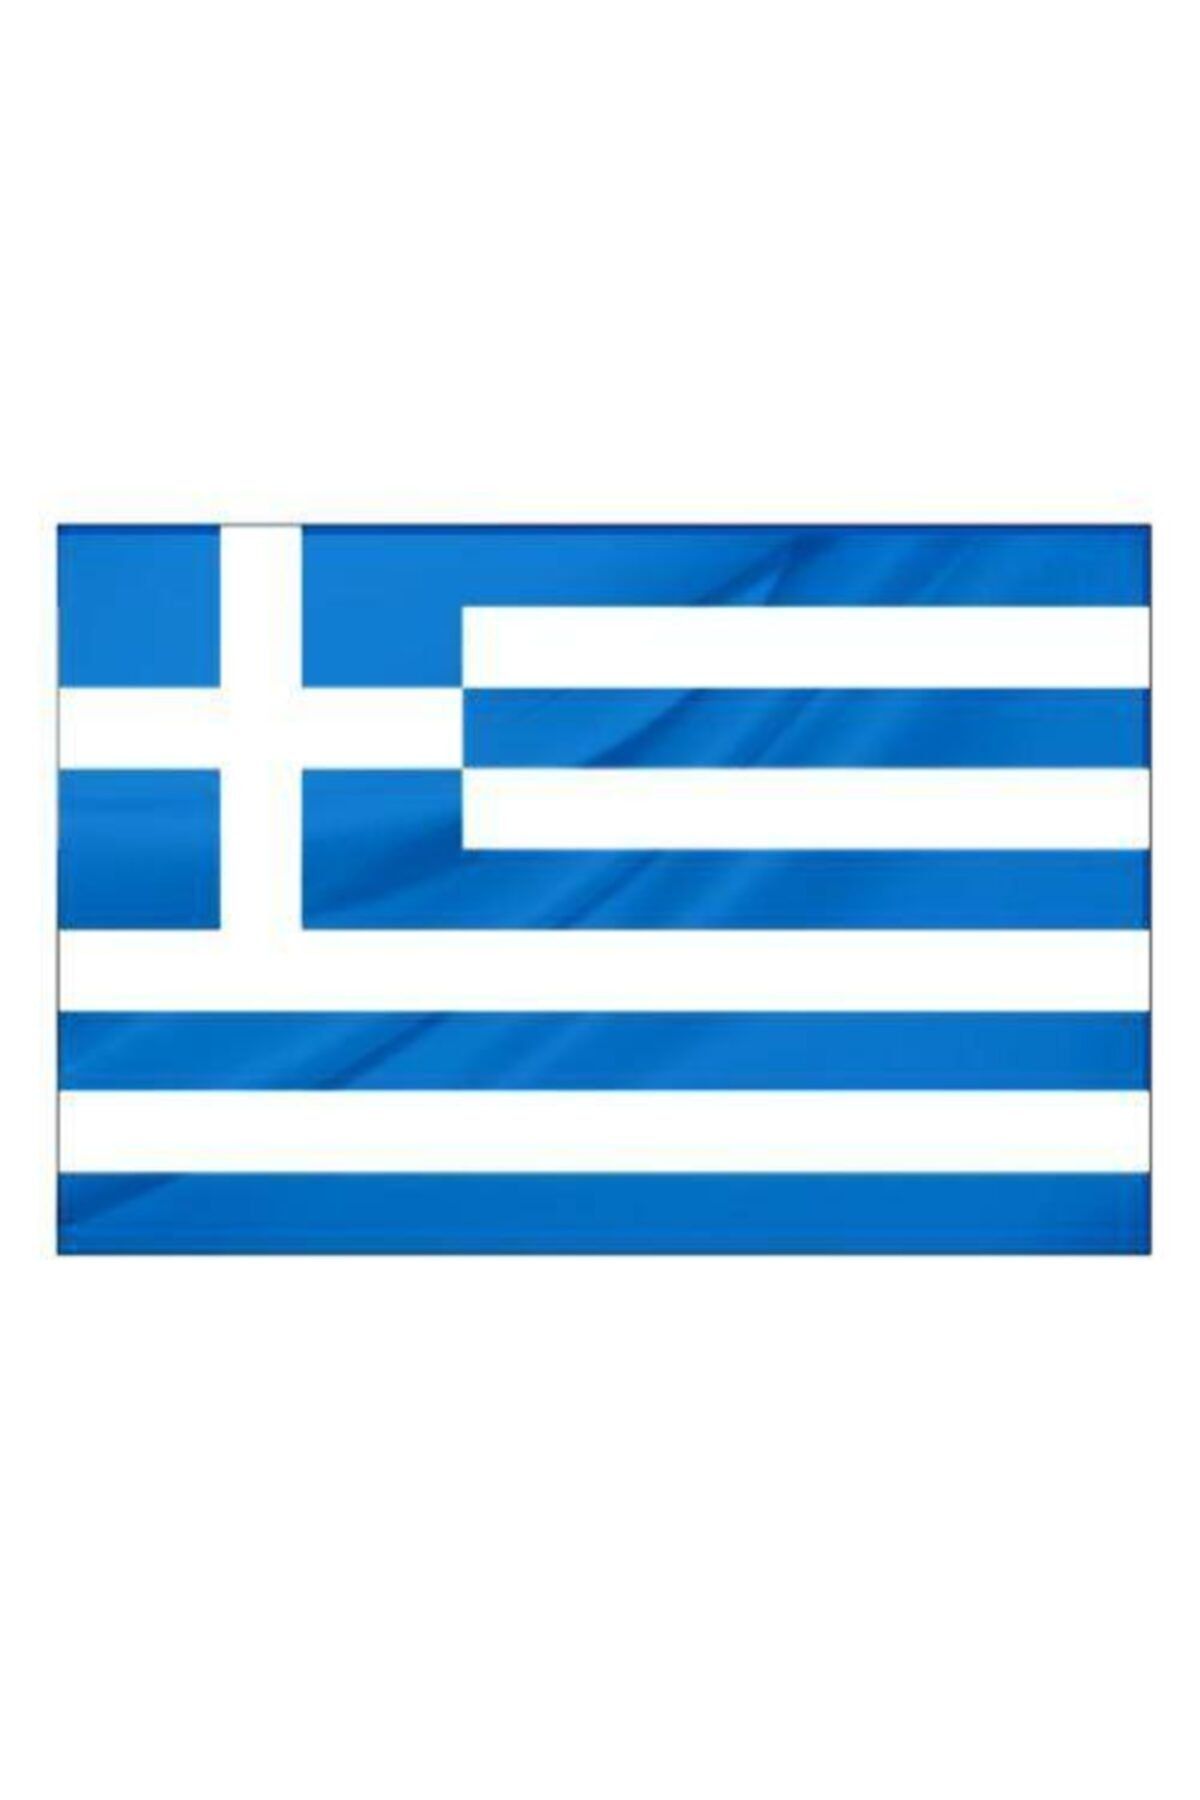 Rekbay Yunanistan Ülke Bayrağı 1.sınıf Parlak Kumaş 50x75 cm